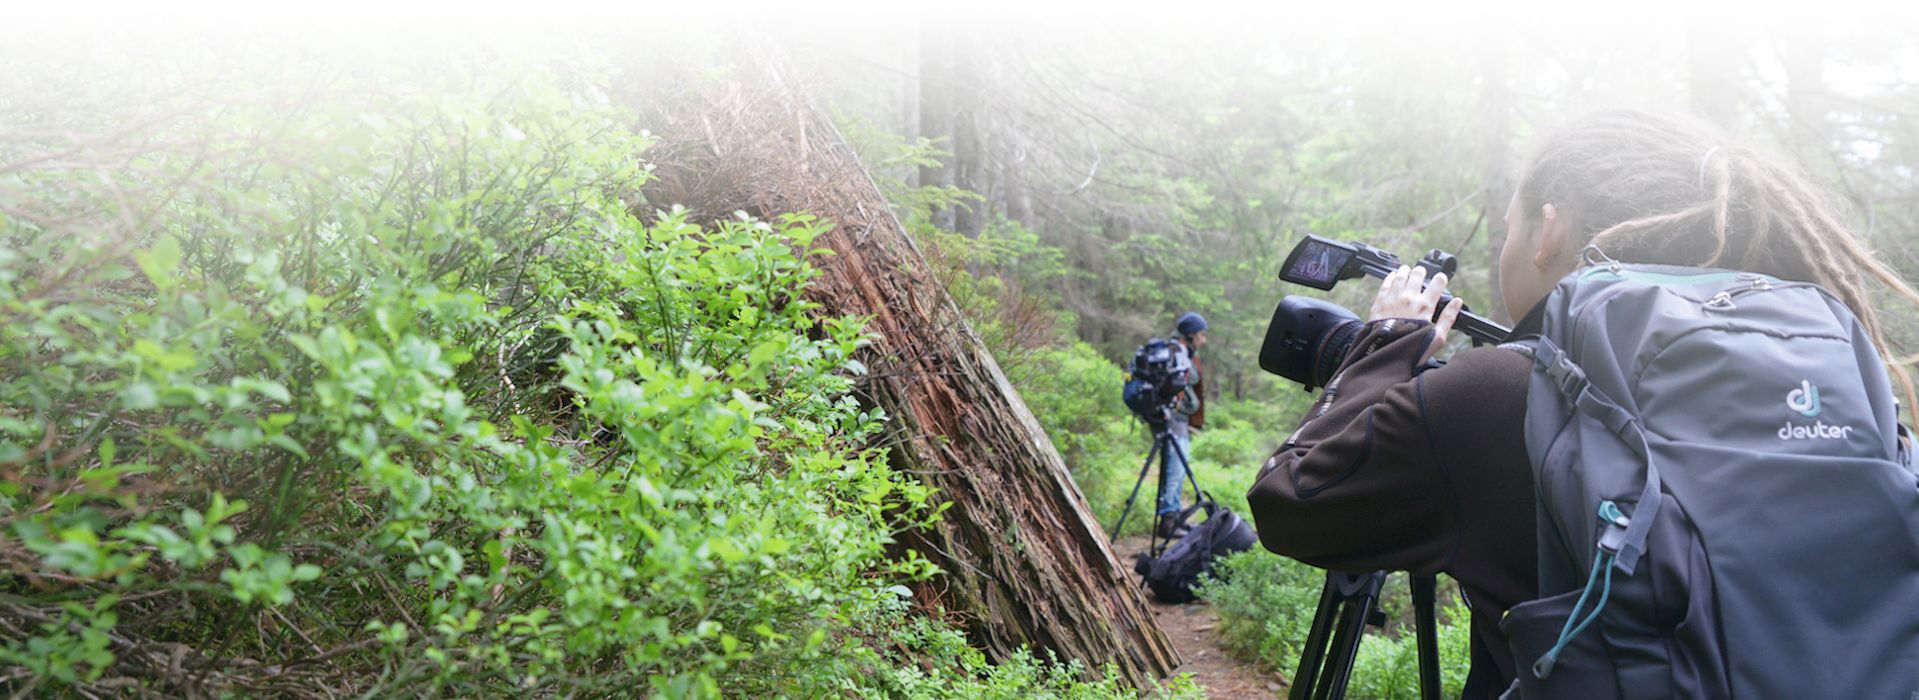 Heidelbeere, Totholz und Fichte. Eine typische Szenerie im Nationalpark Schwarzwald wird mit der Kamera eingefangen